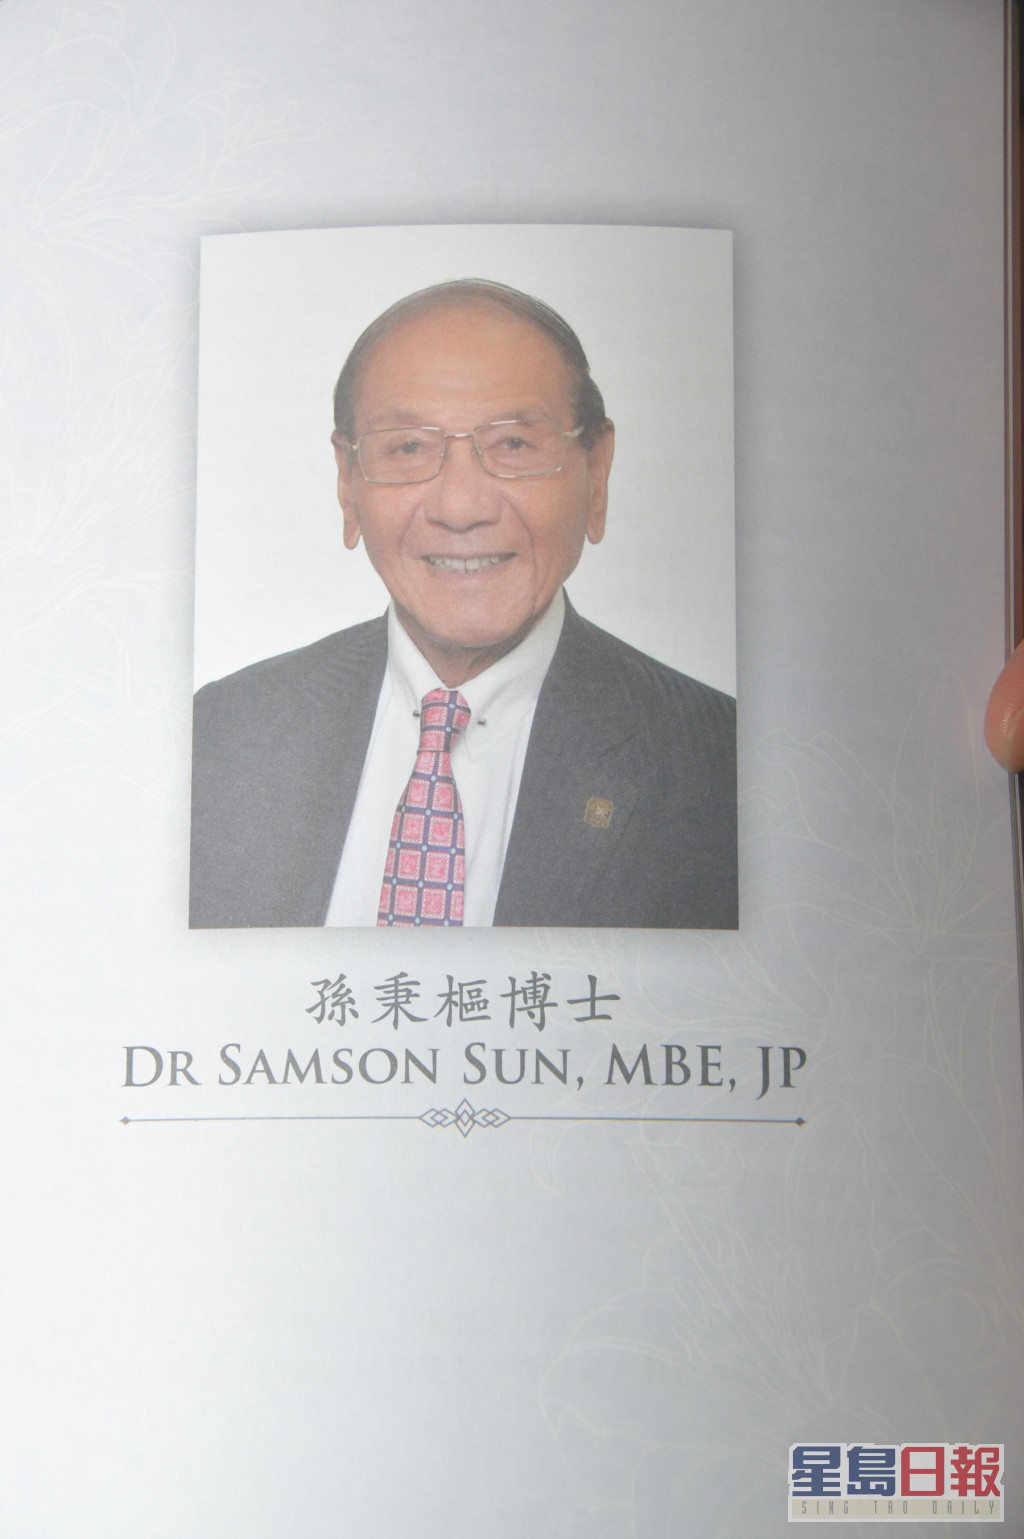 悼念冊內印有孫博士的照片。